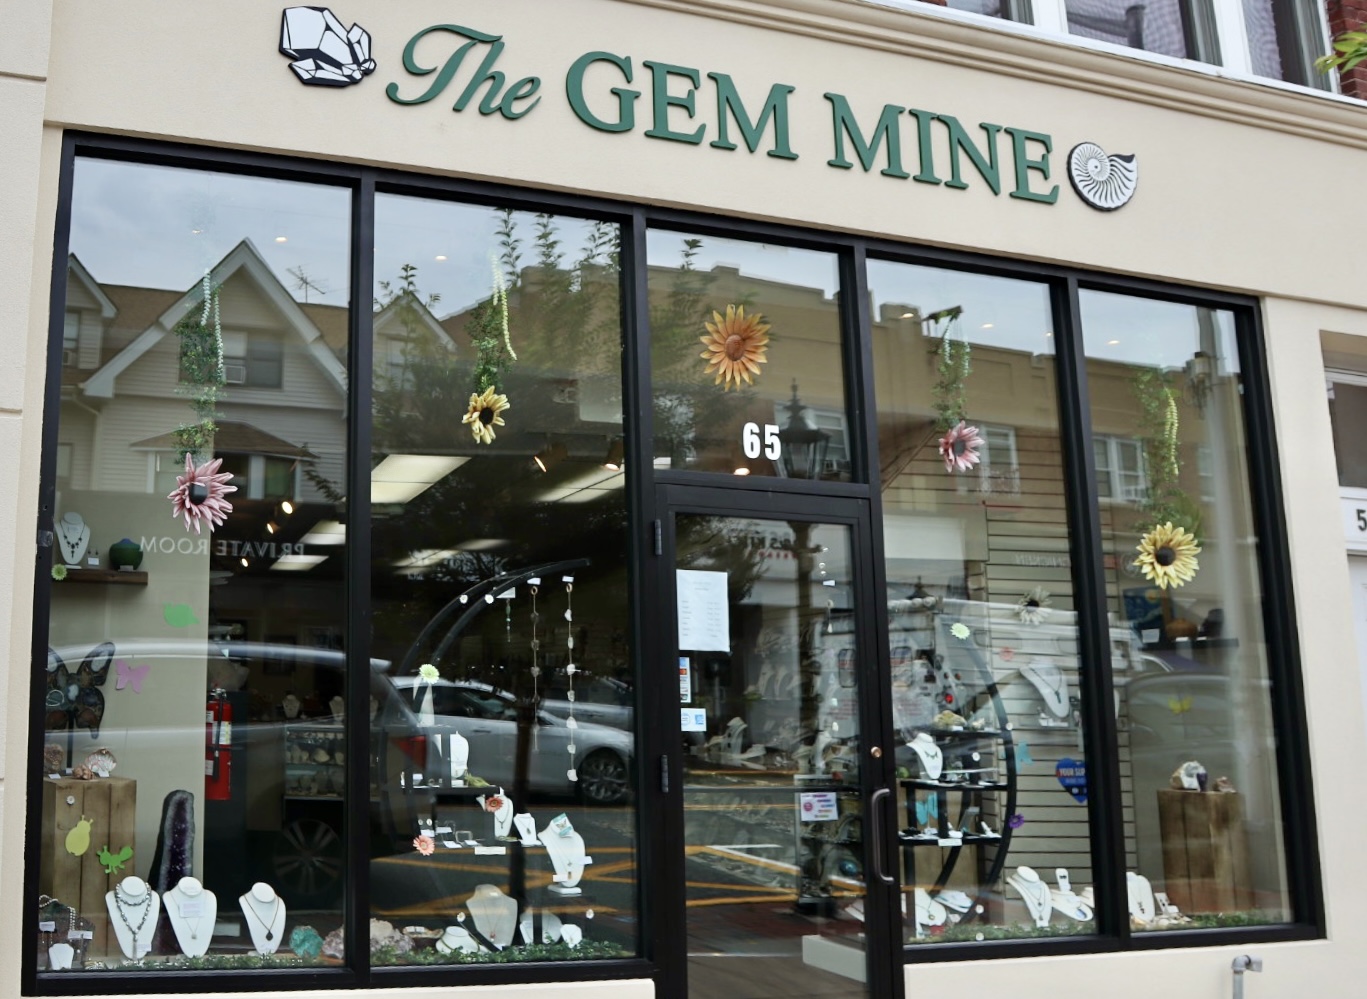 The Gem Mine